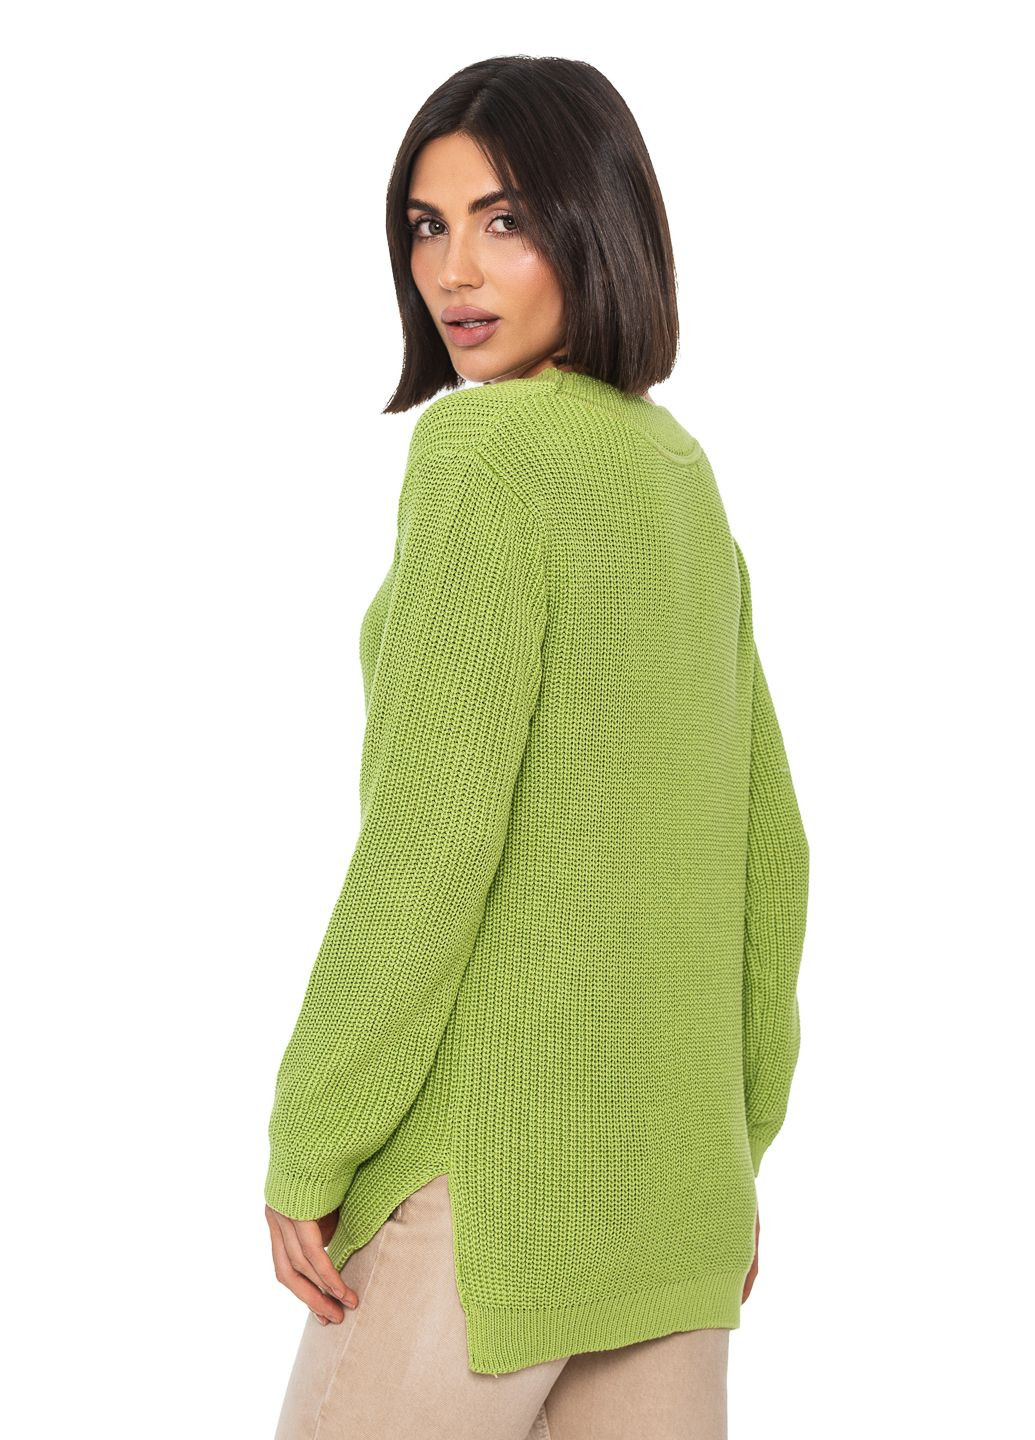 Салатовый женский хлопковый свитер с v-образным воротником SVTR